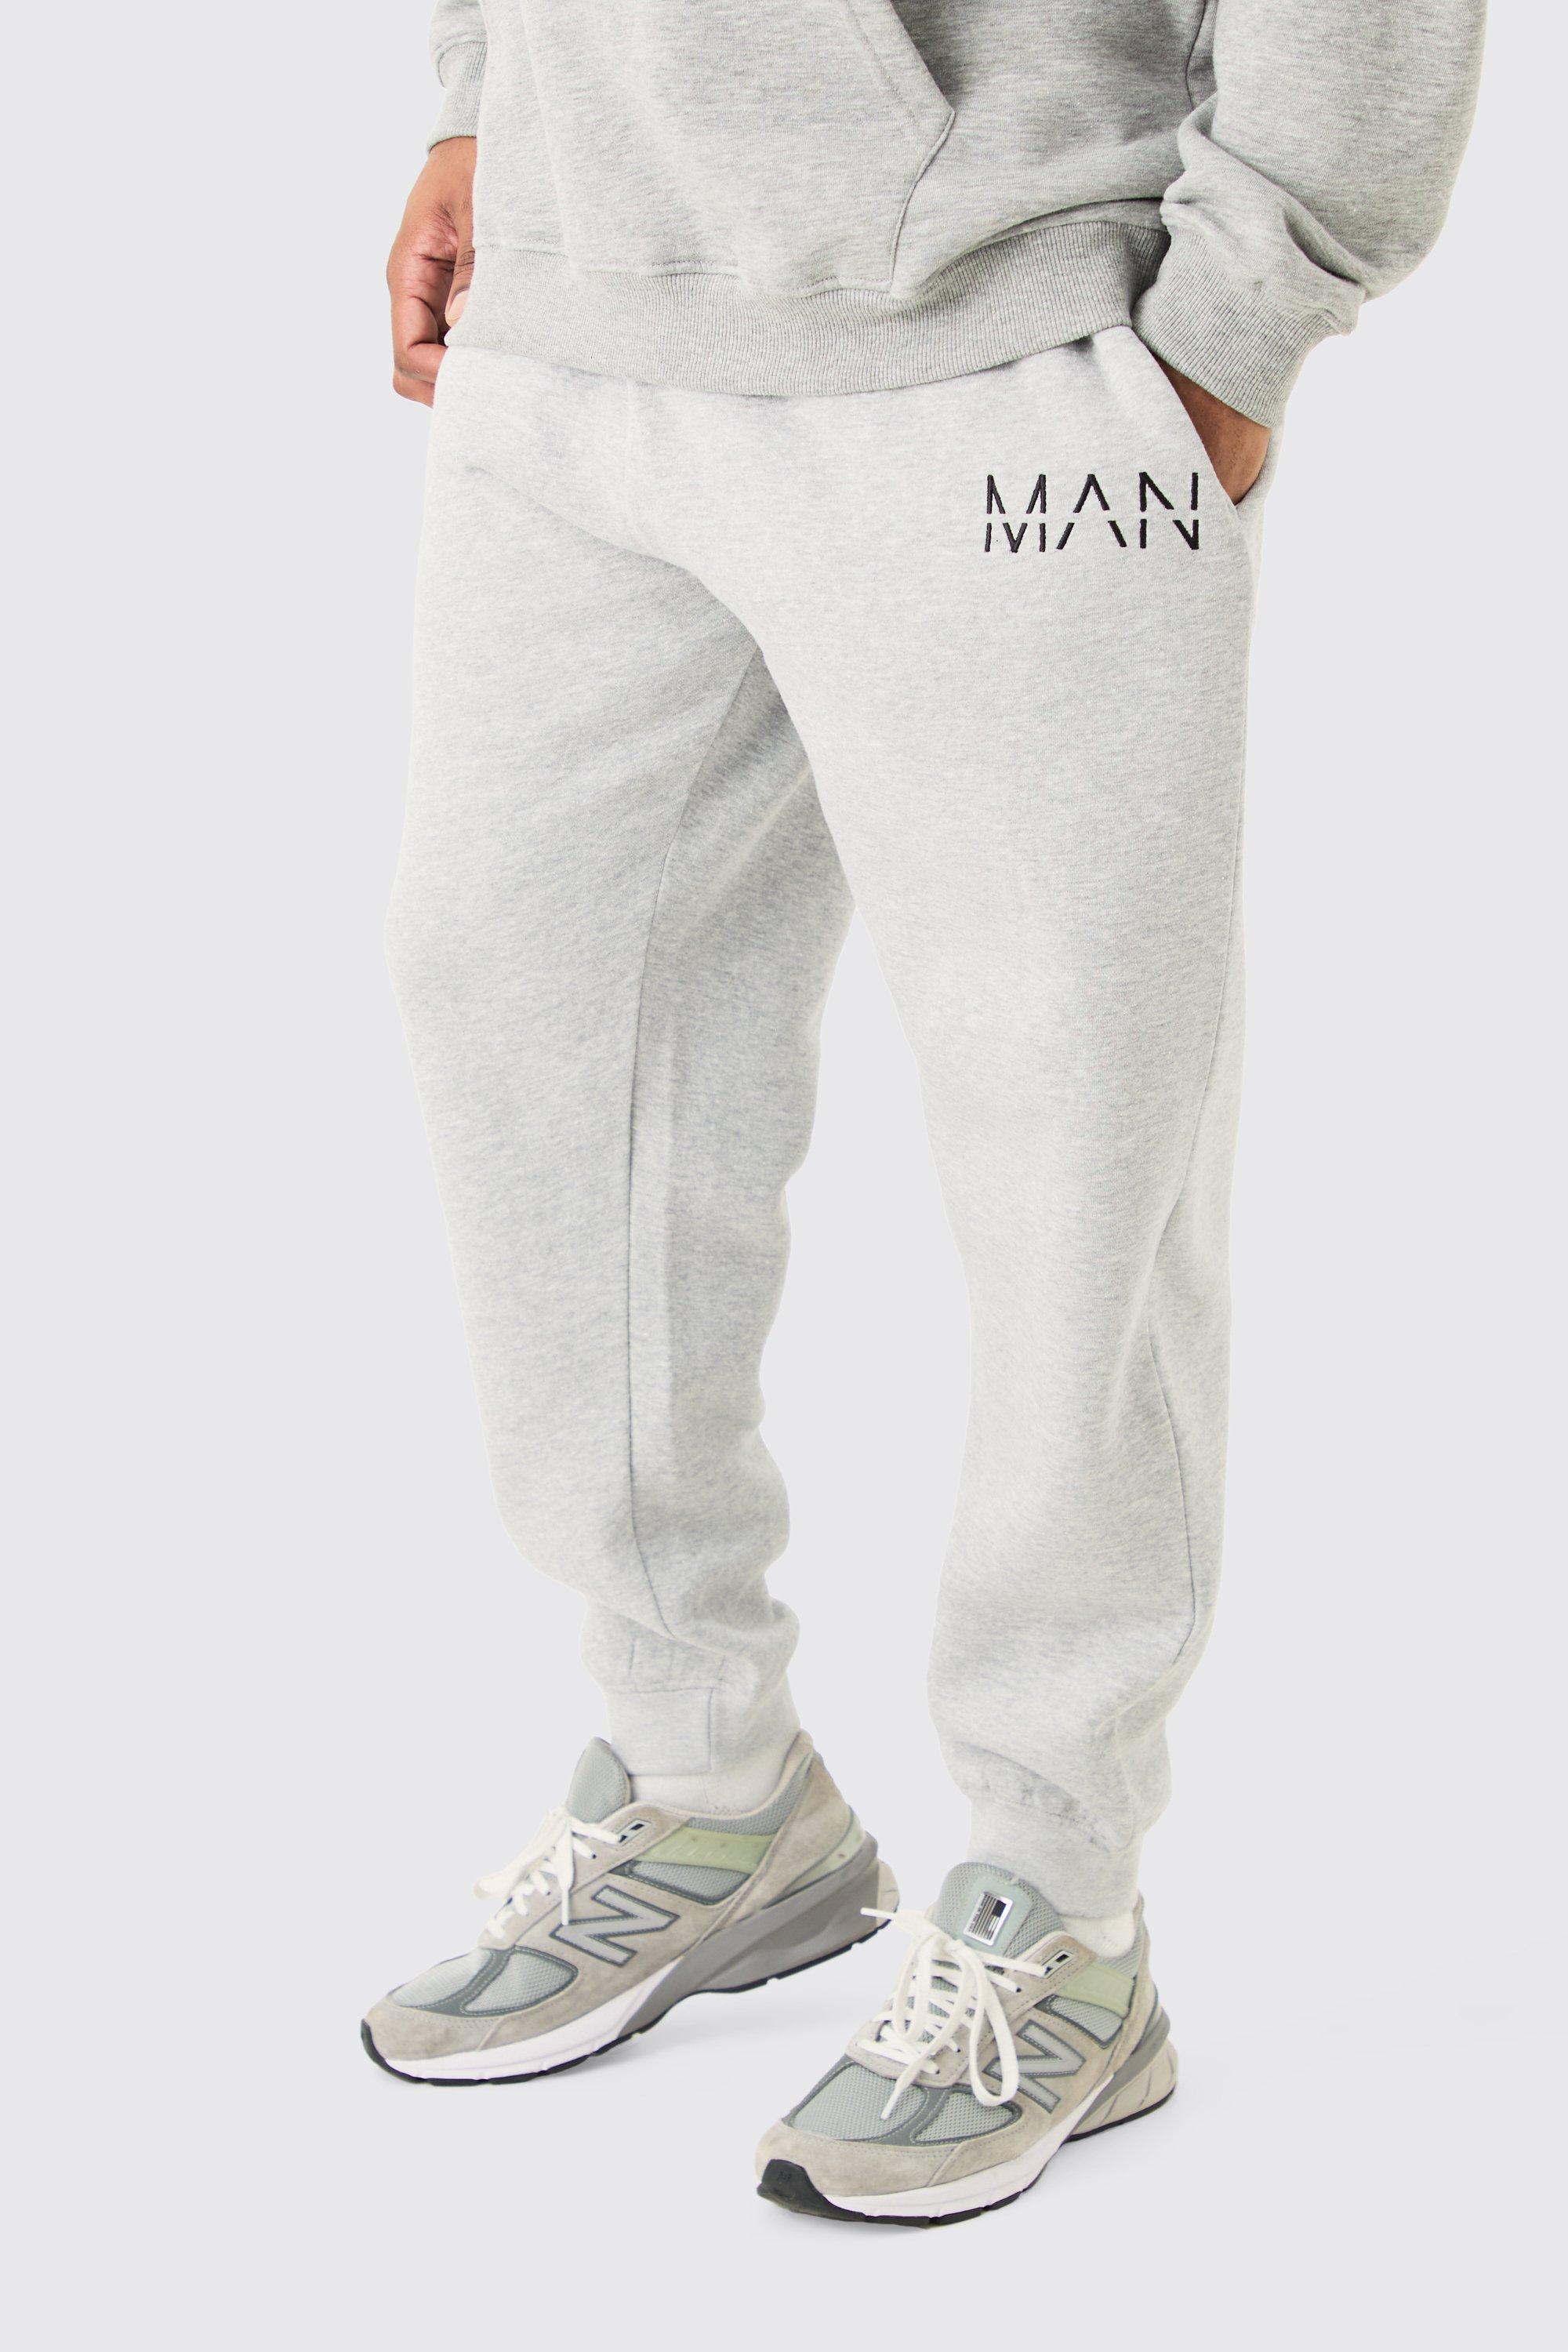 Image of Plus Man Dash Slim Fit Jogger In Grey Marl, Grigio